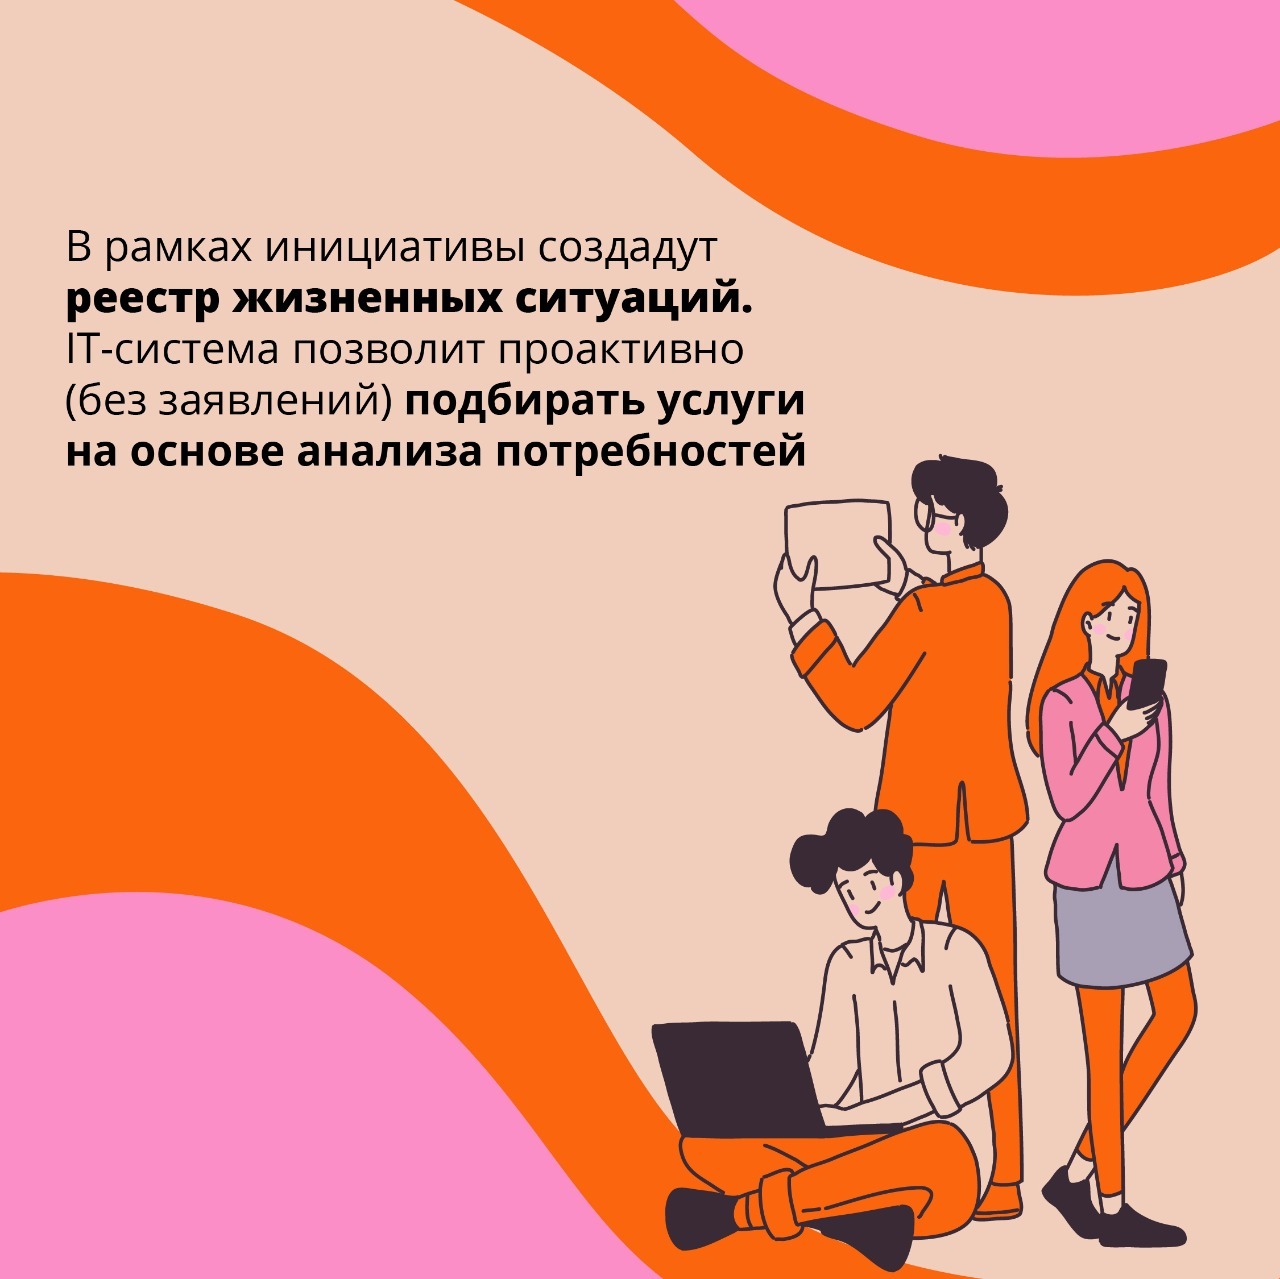 Башкортостан ориентируется на клиентоцентричность в сфере предоставления государственных услуг